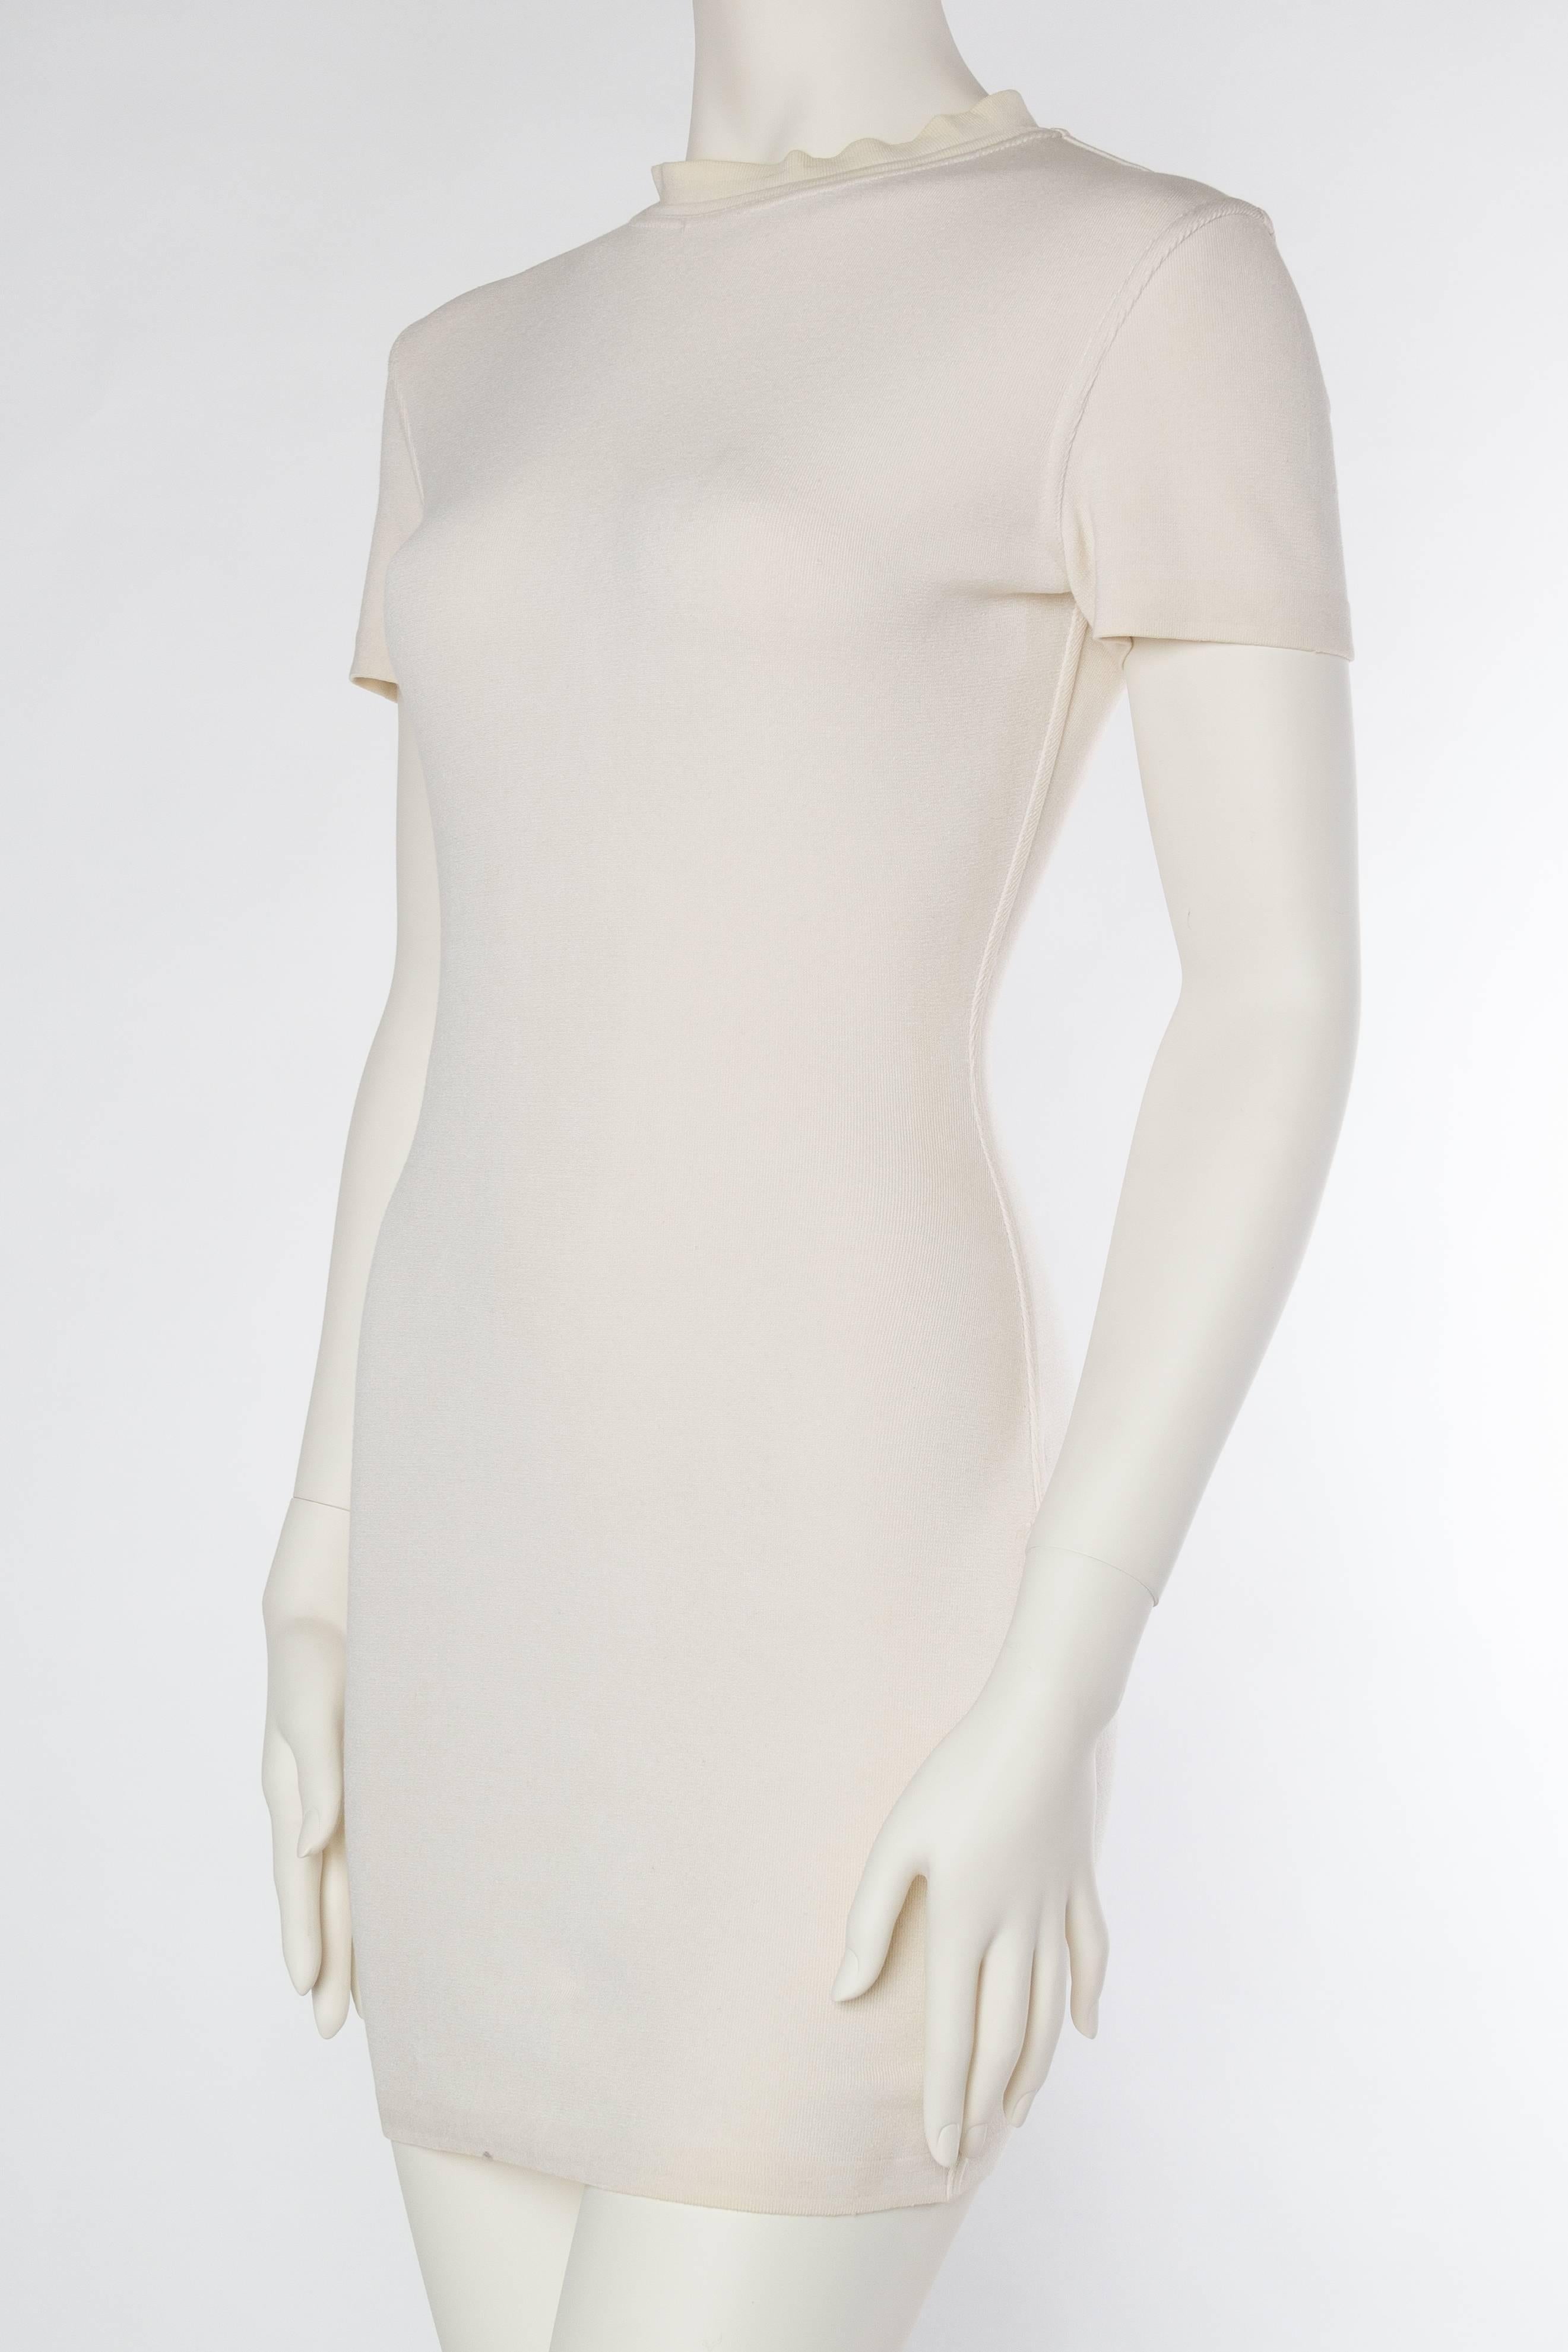 Women's Alaia White Dress